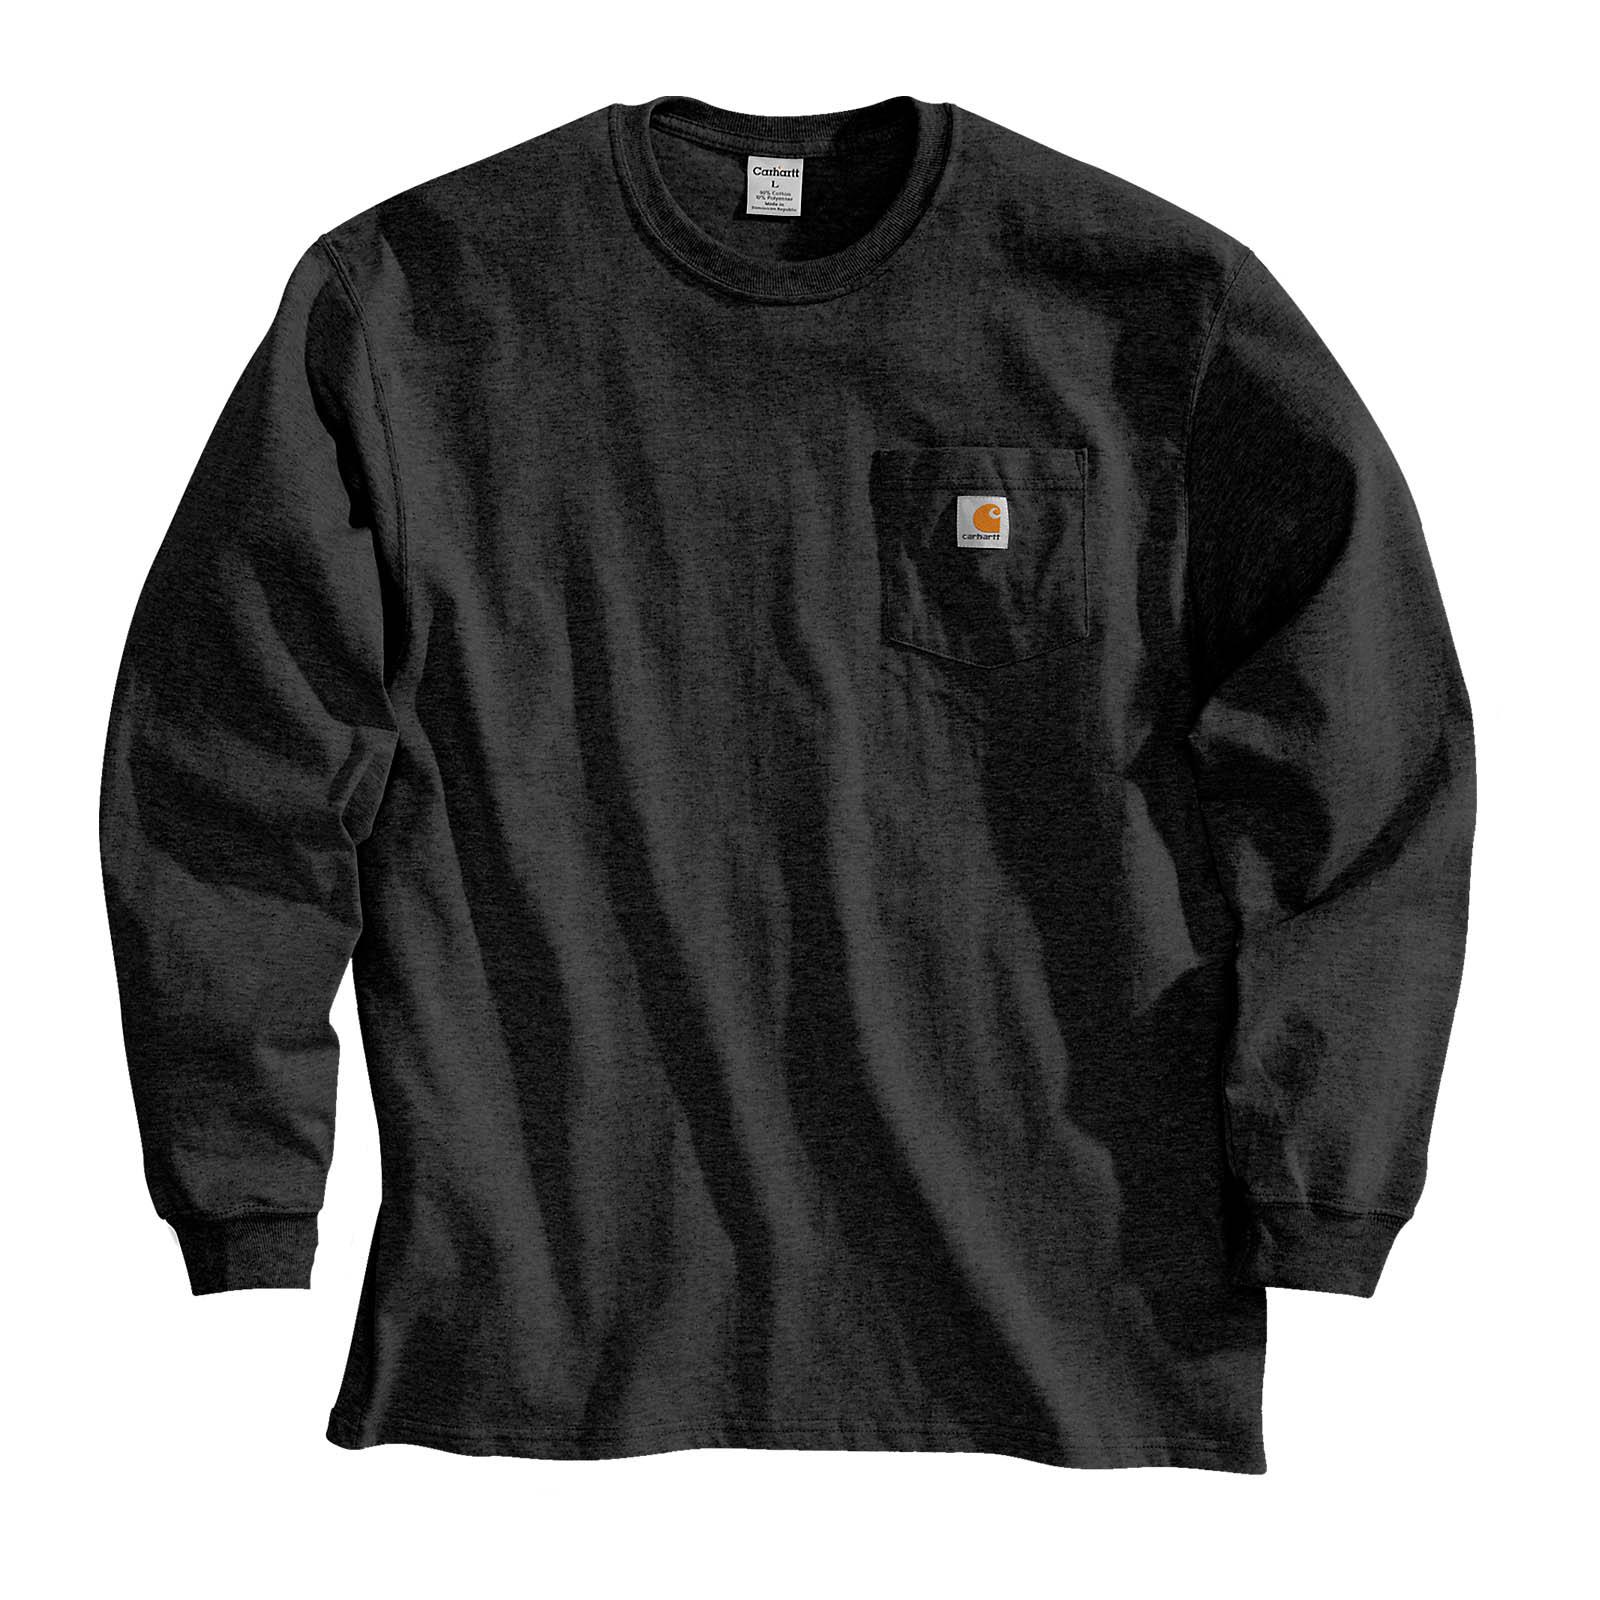 Carhartt Herren Sweatshirt Brusttasche Workwear Pullover Langarmshirt eBay | Pocket